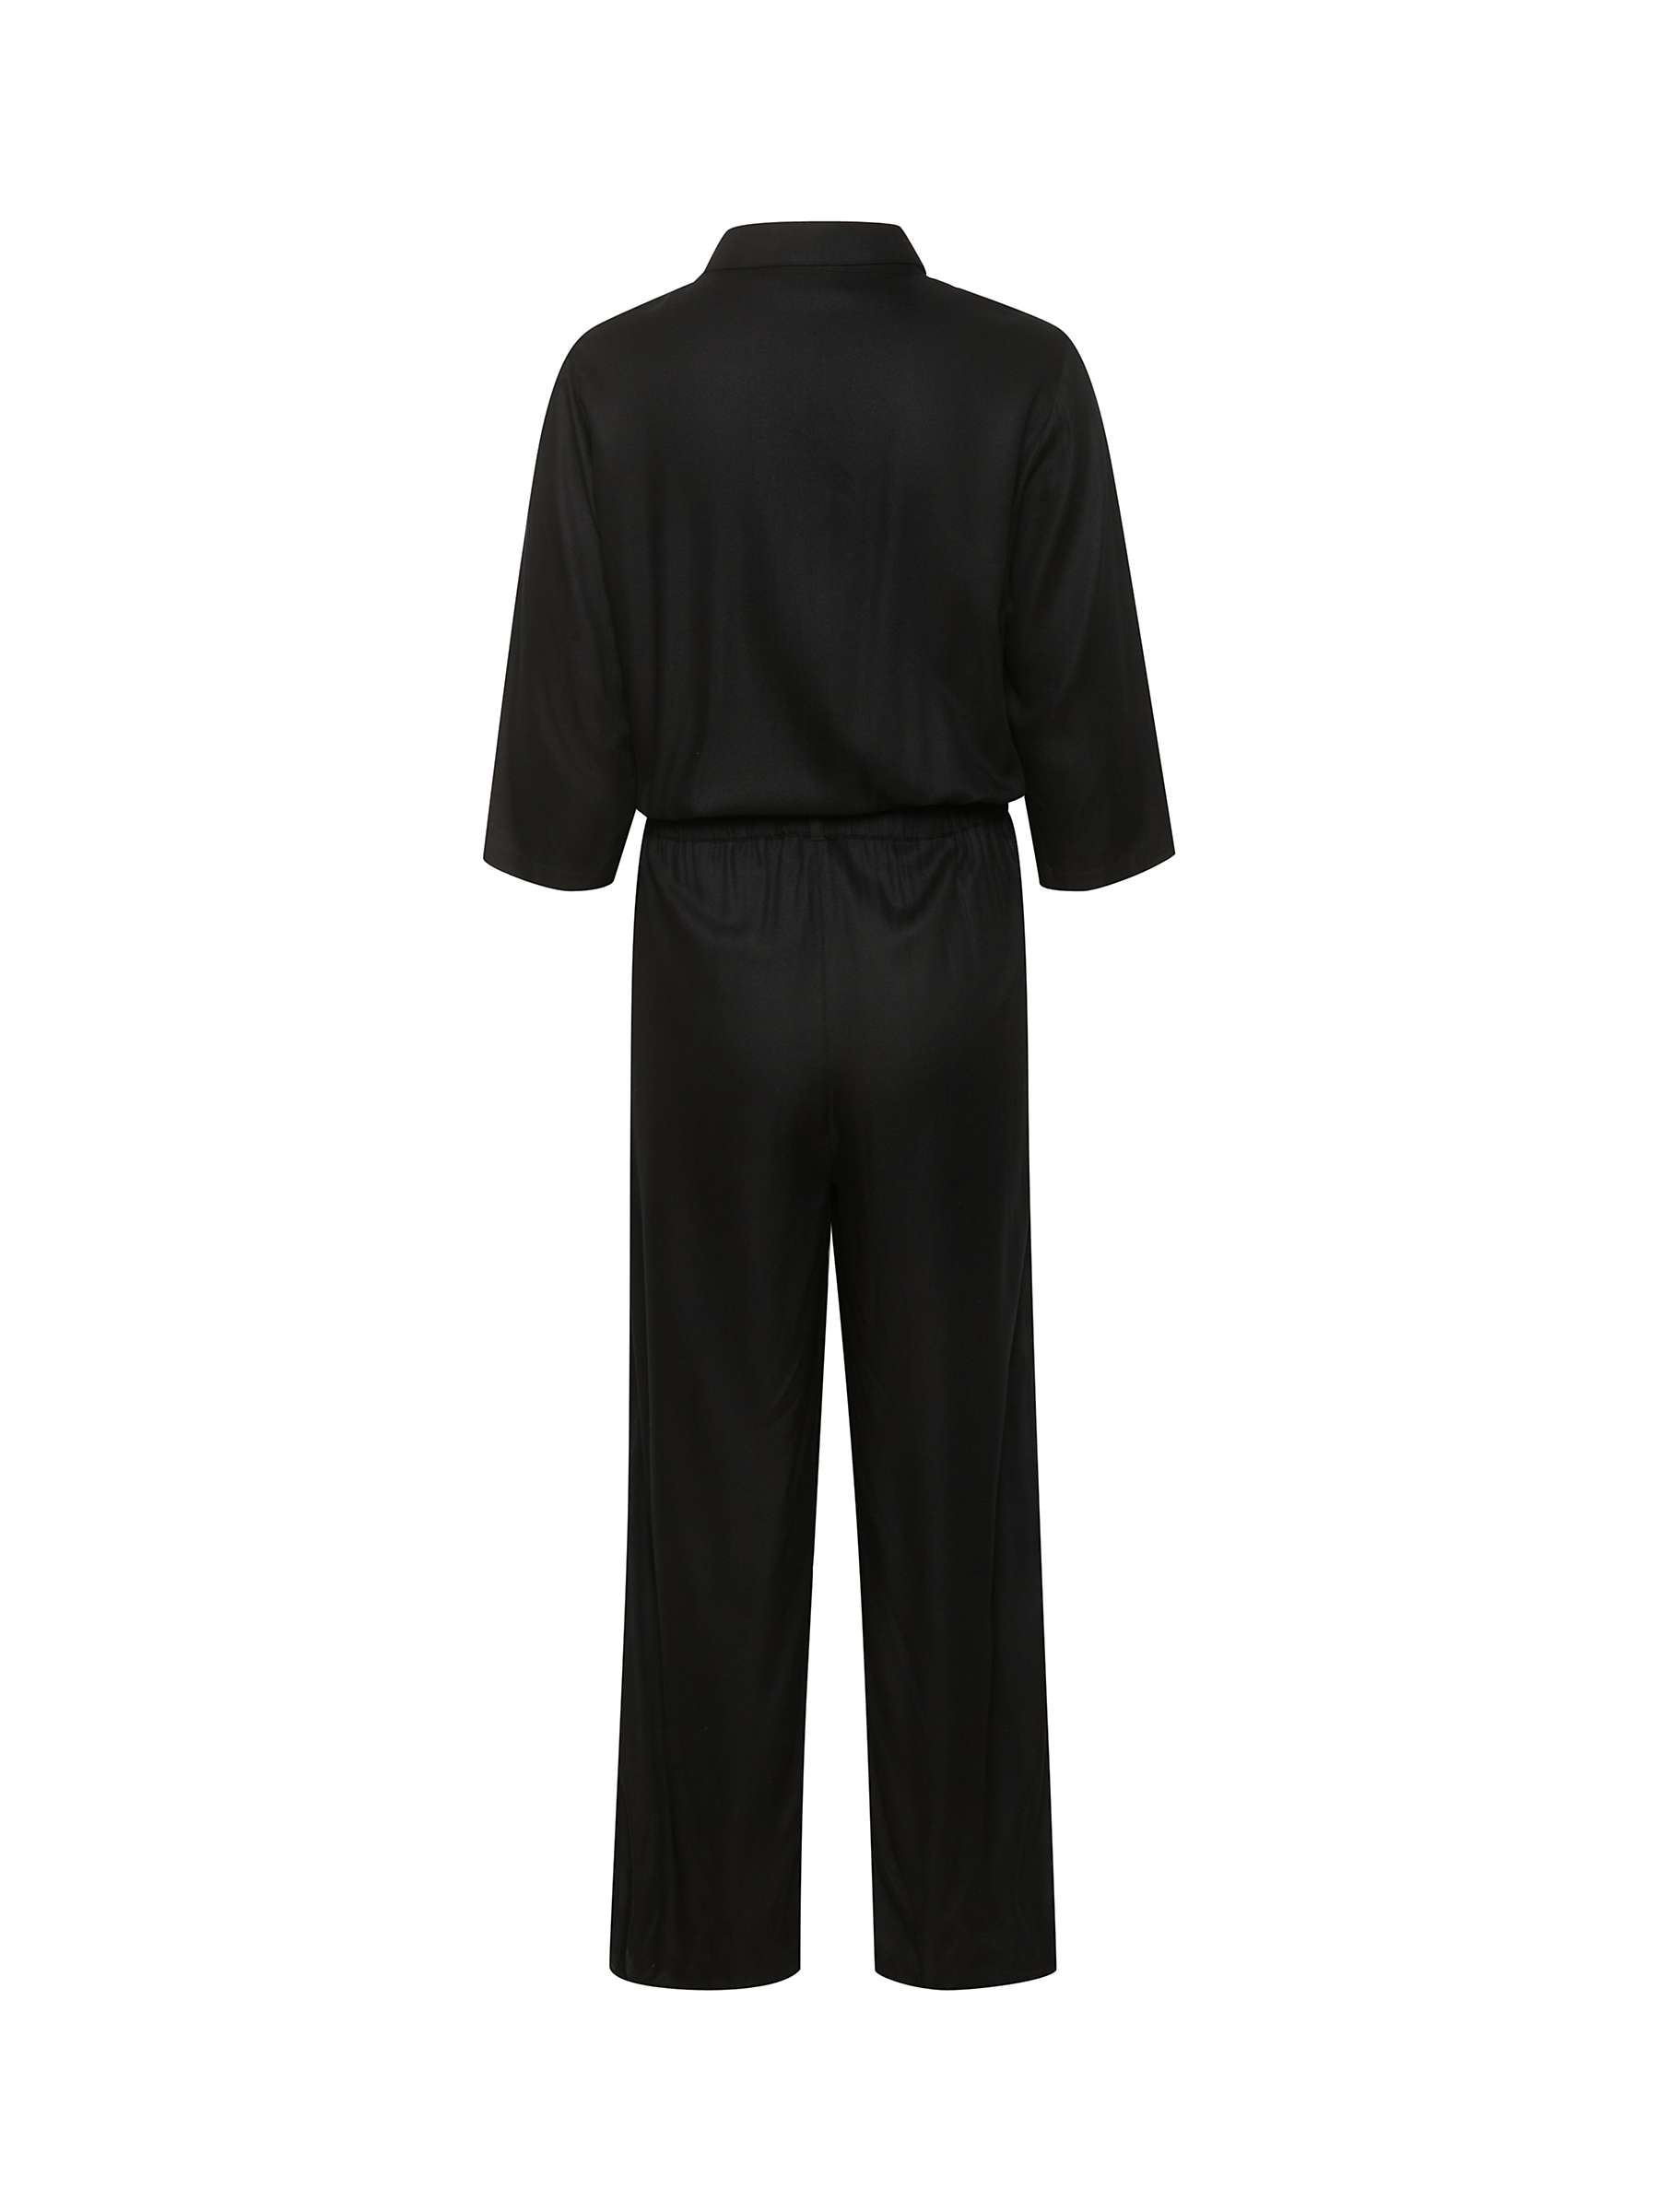 Buy KAFFE Ruthie 3/4 Sleeve Boilersuit, Deep Black Online at johnlewis.com